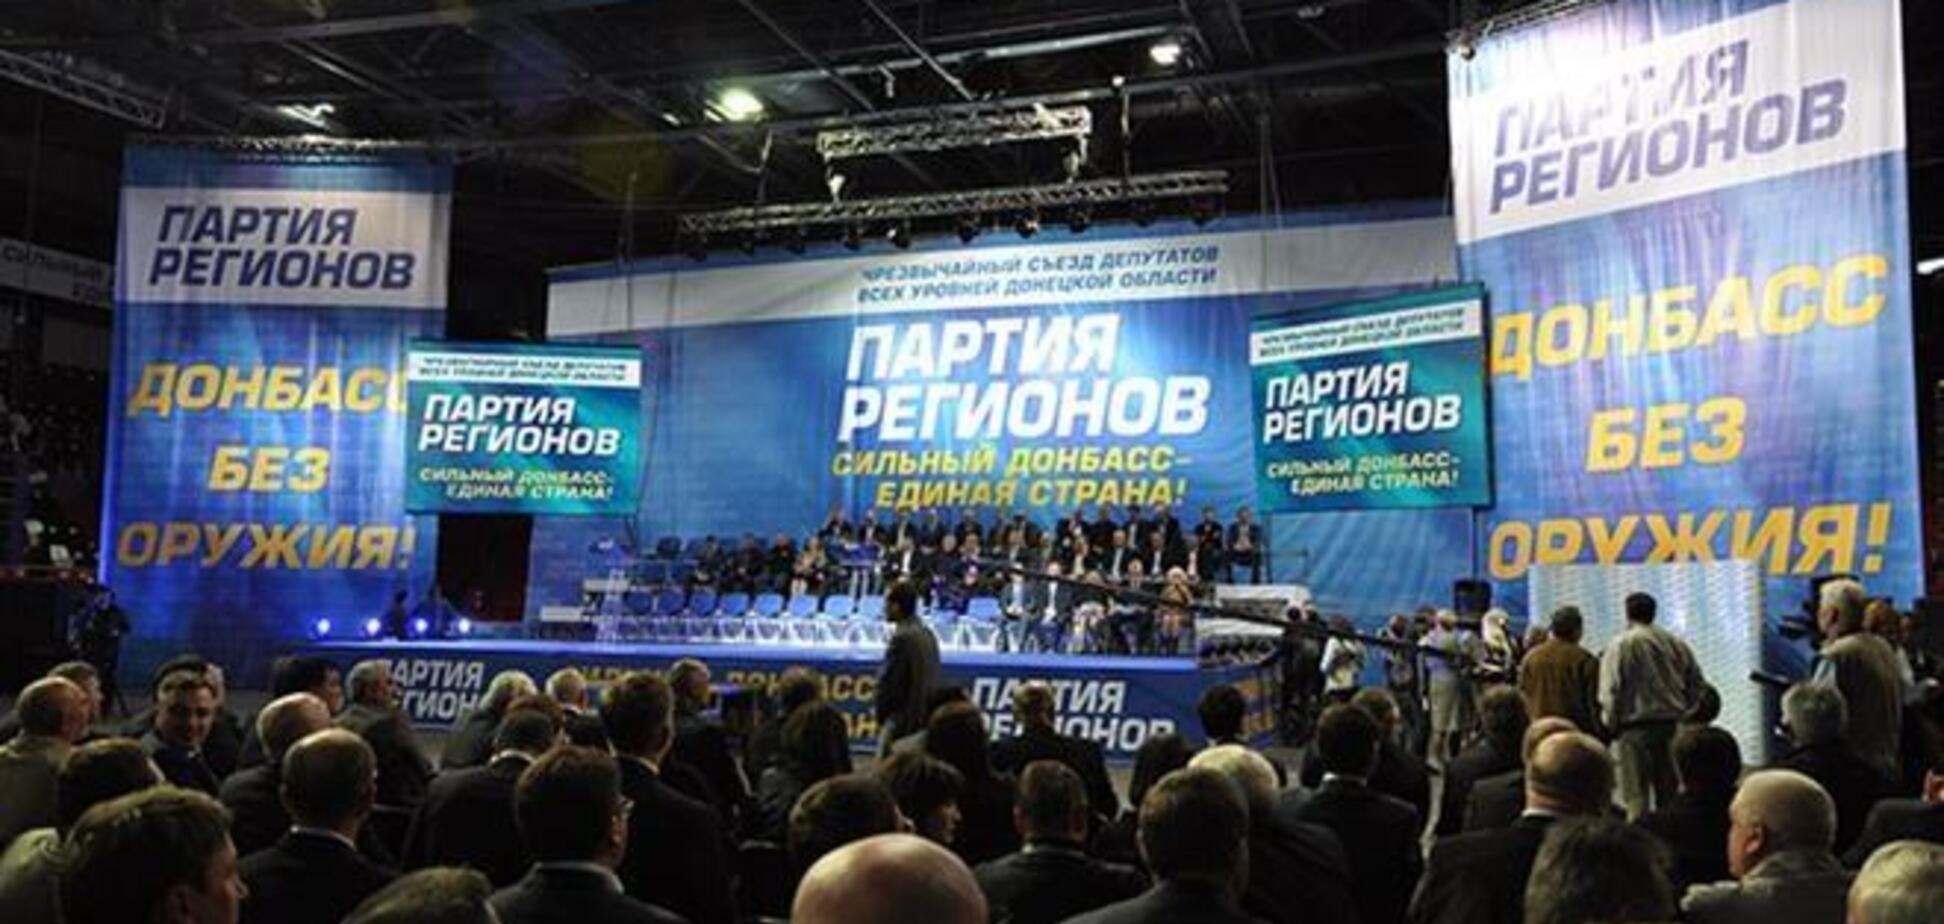 Регионалы Донбасса выступили за референдум, освобождение админзданий и второй государственный язык